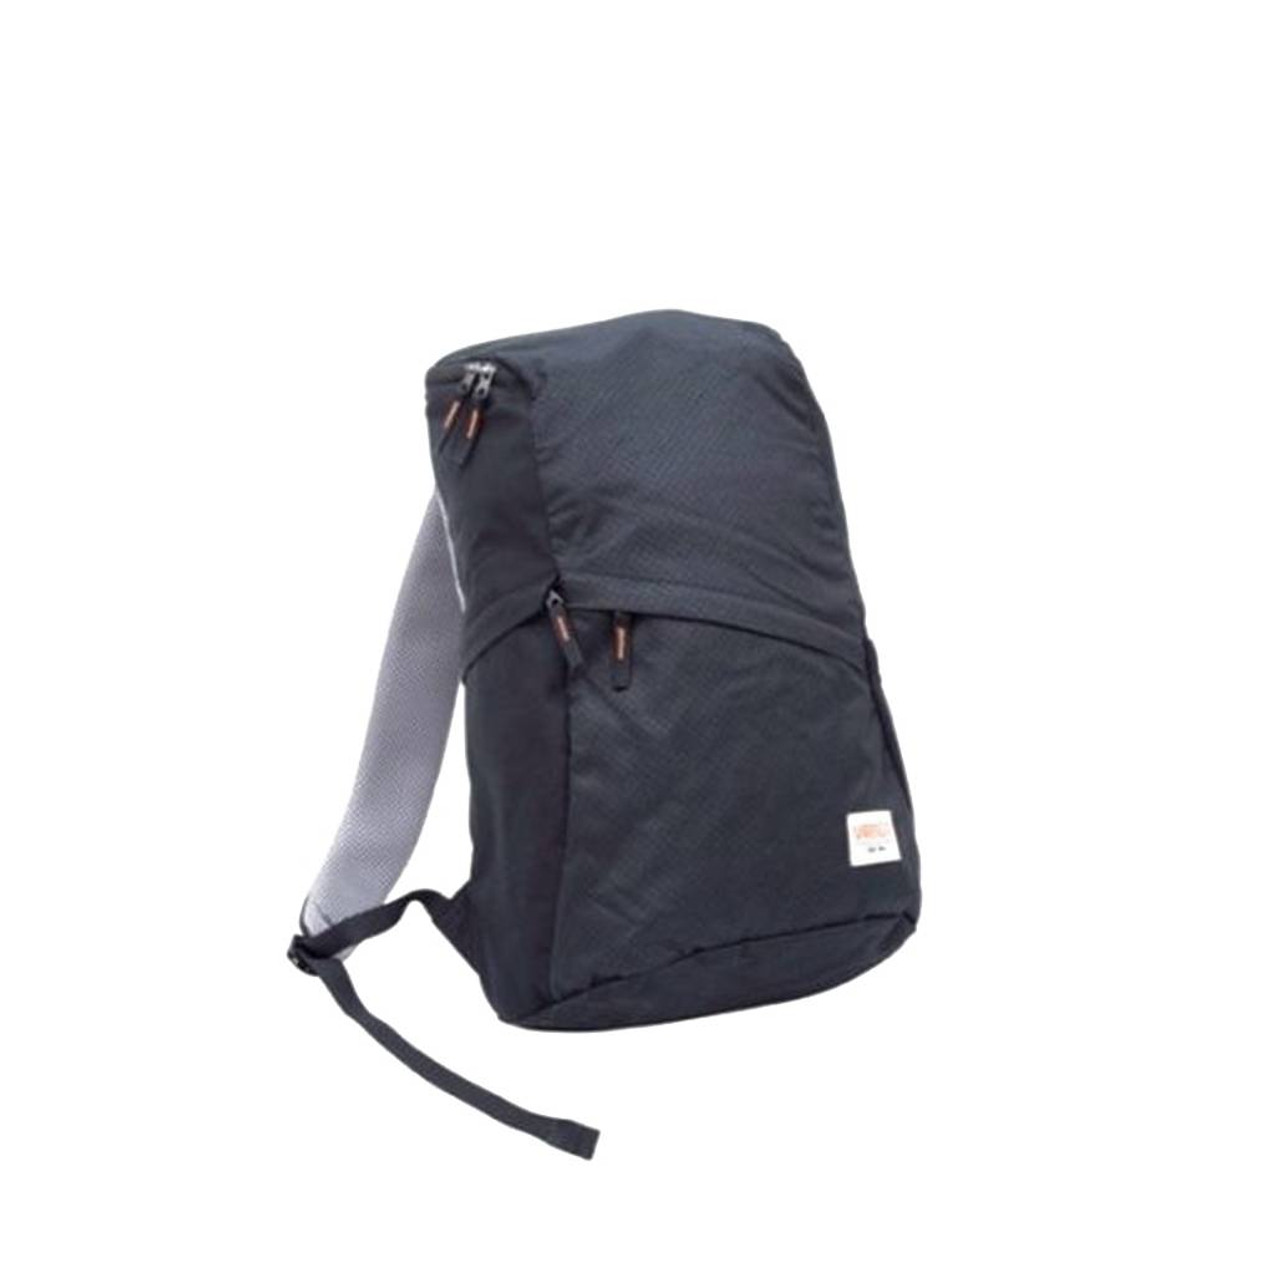 Mica 20 Backpack